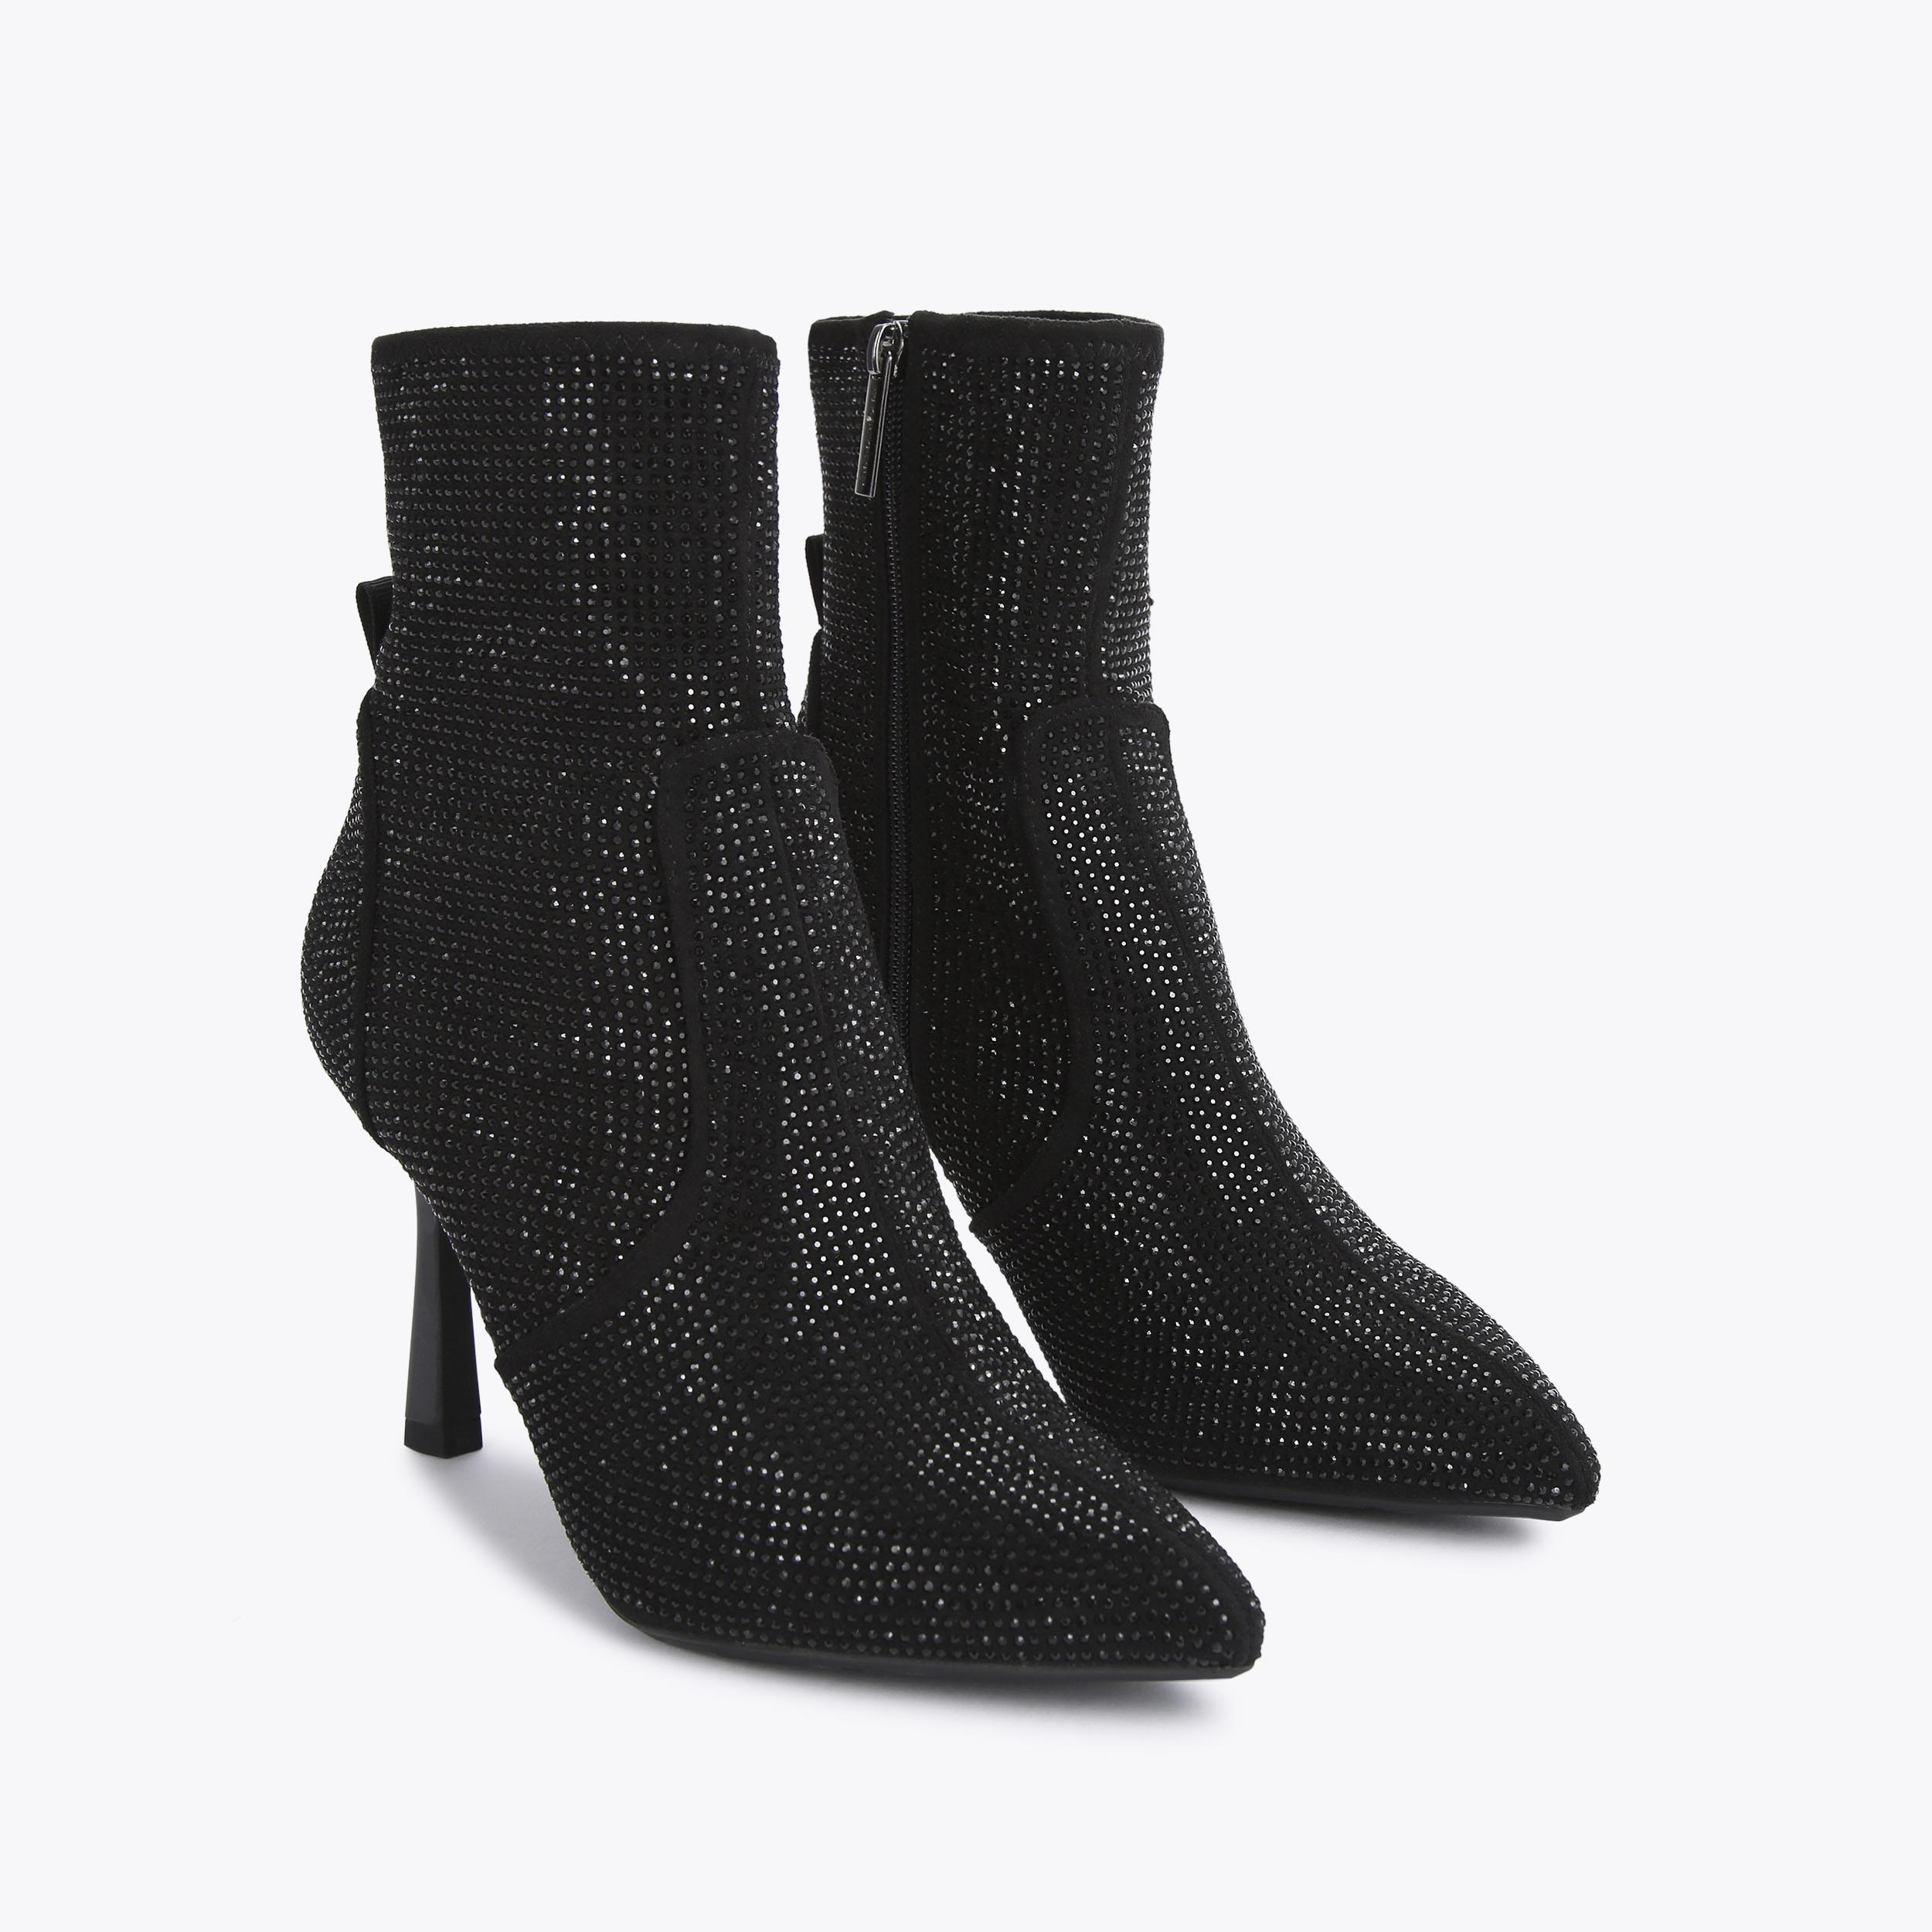 FRANCESCA BLING Black Crystal Ankle Boots by KG KURT GEIGER